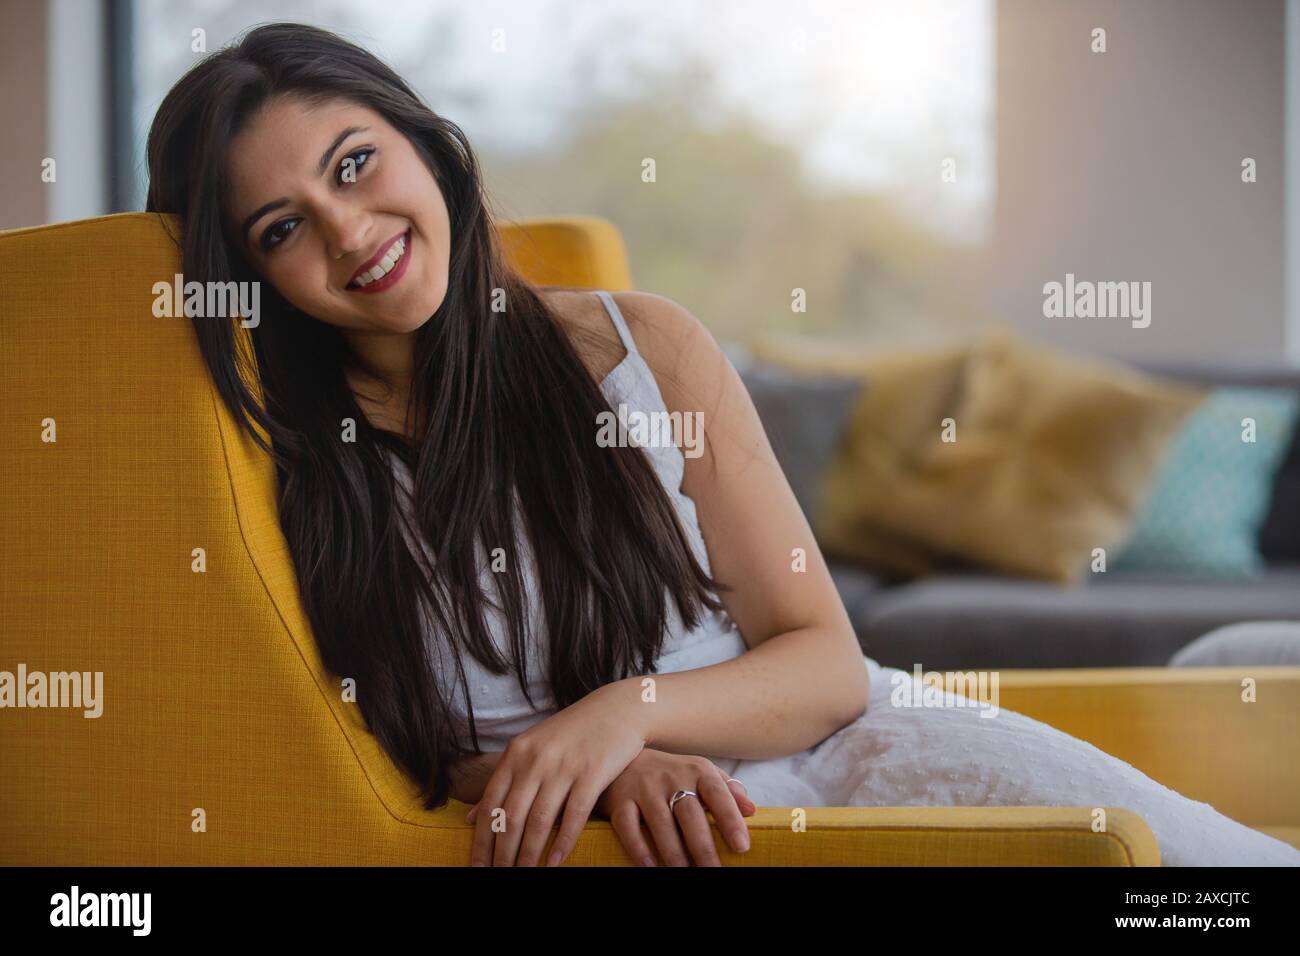 Caldo e cordiale ritratto sincero di una donna indiana di etnia mista, simpatica e genuina a casa, rilassante sul divano Foto Stock